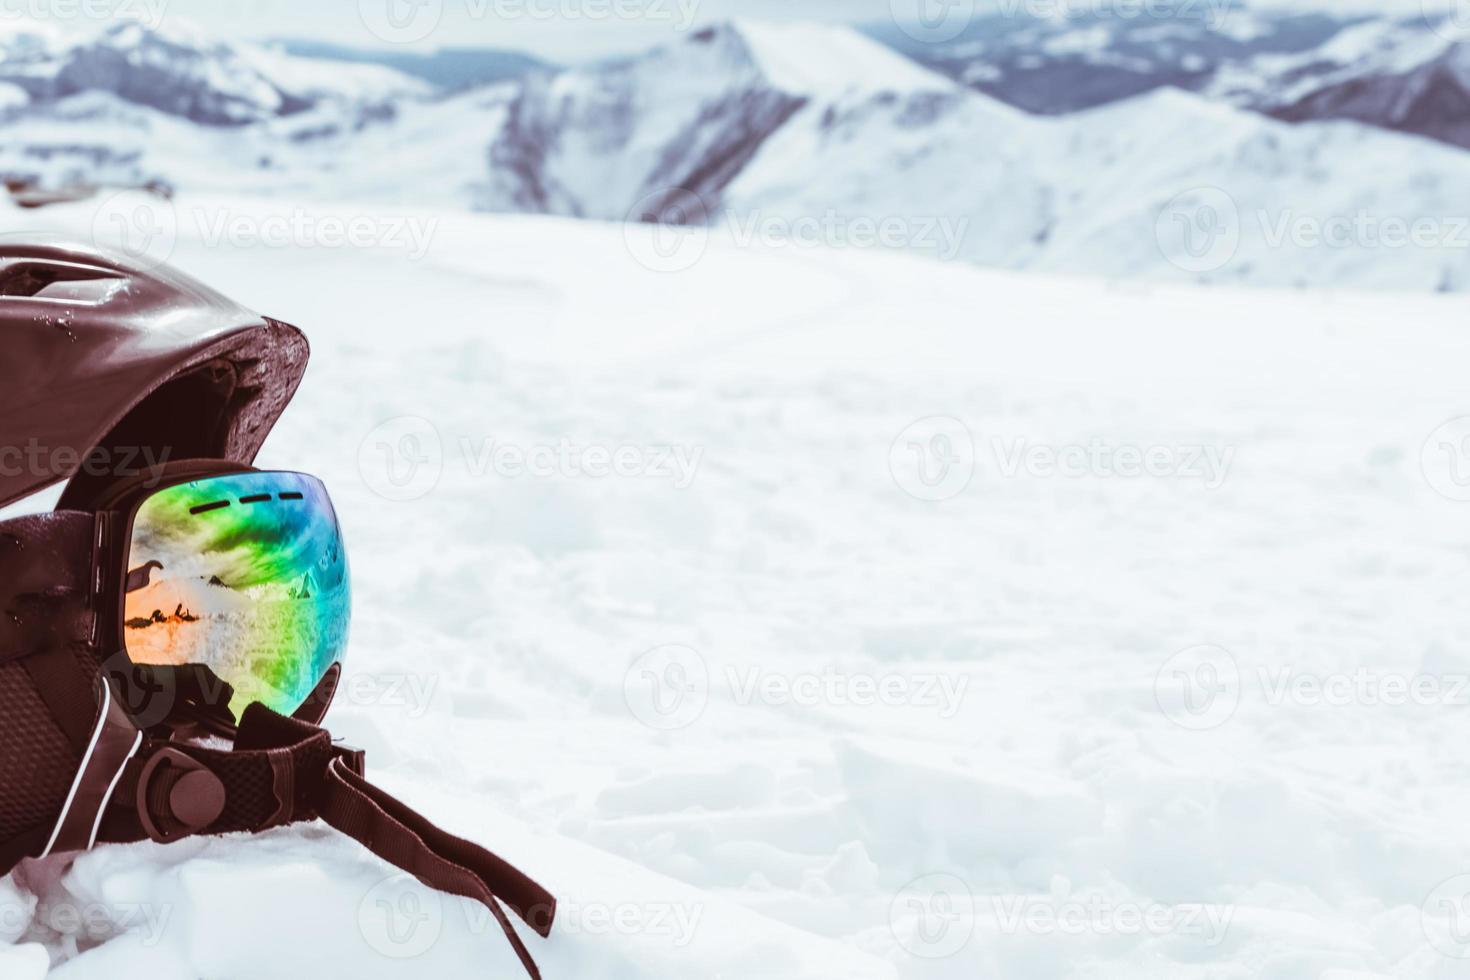 Casco negro con gafas de esquí en la nieve con fondo de paisaje de montañas nevadas blancas foto